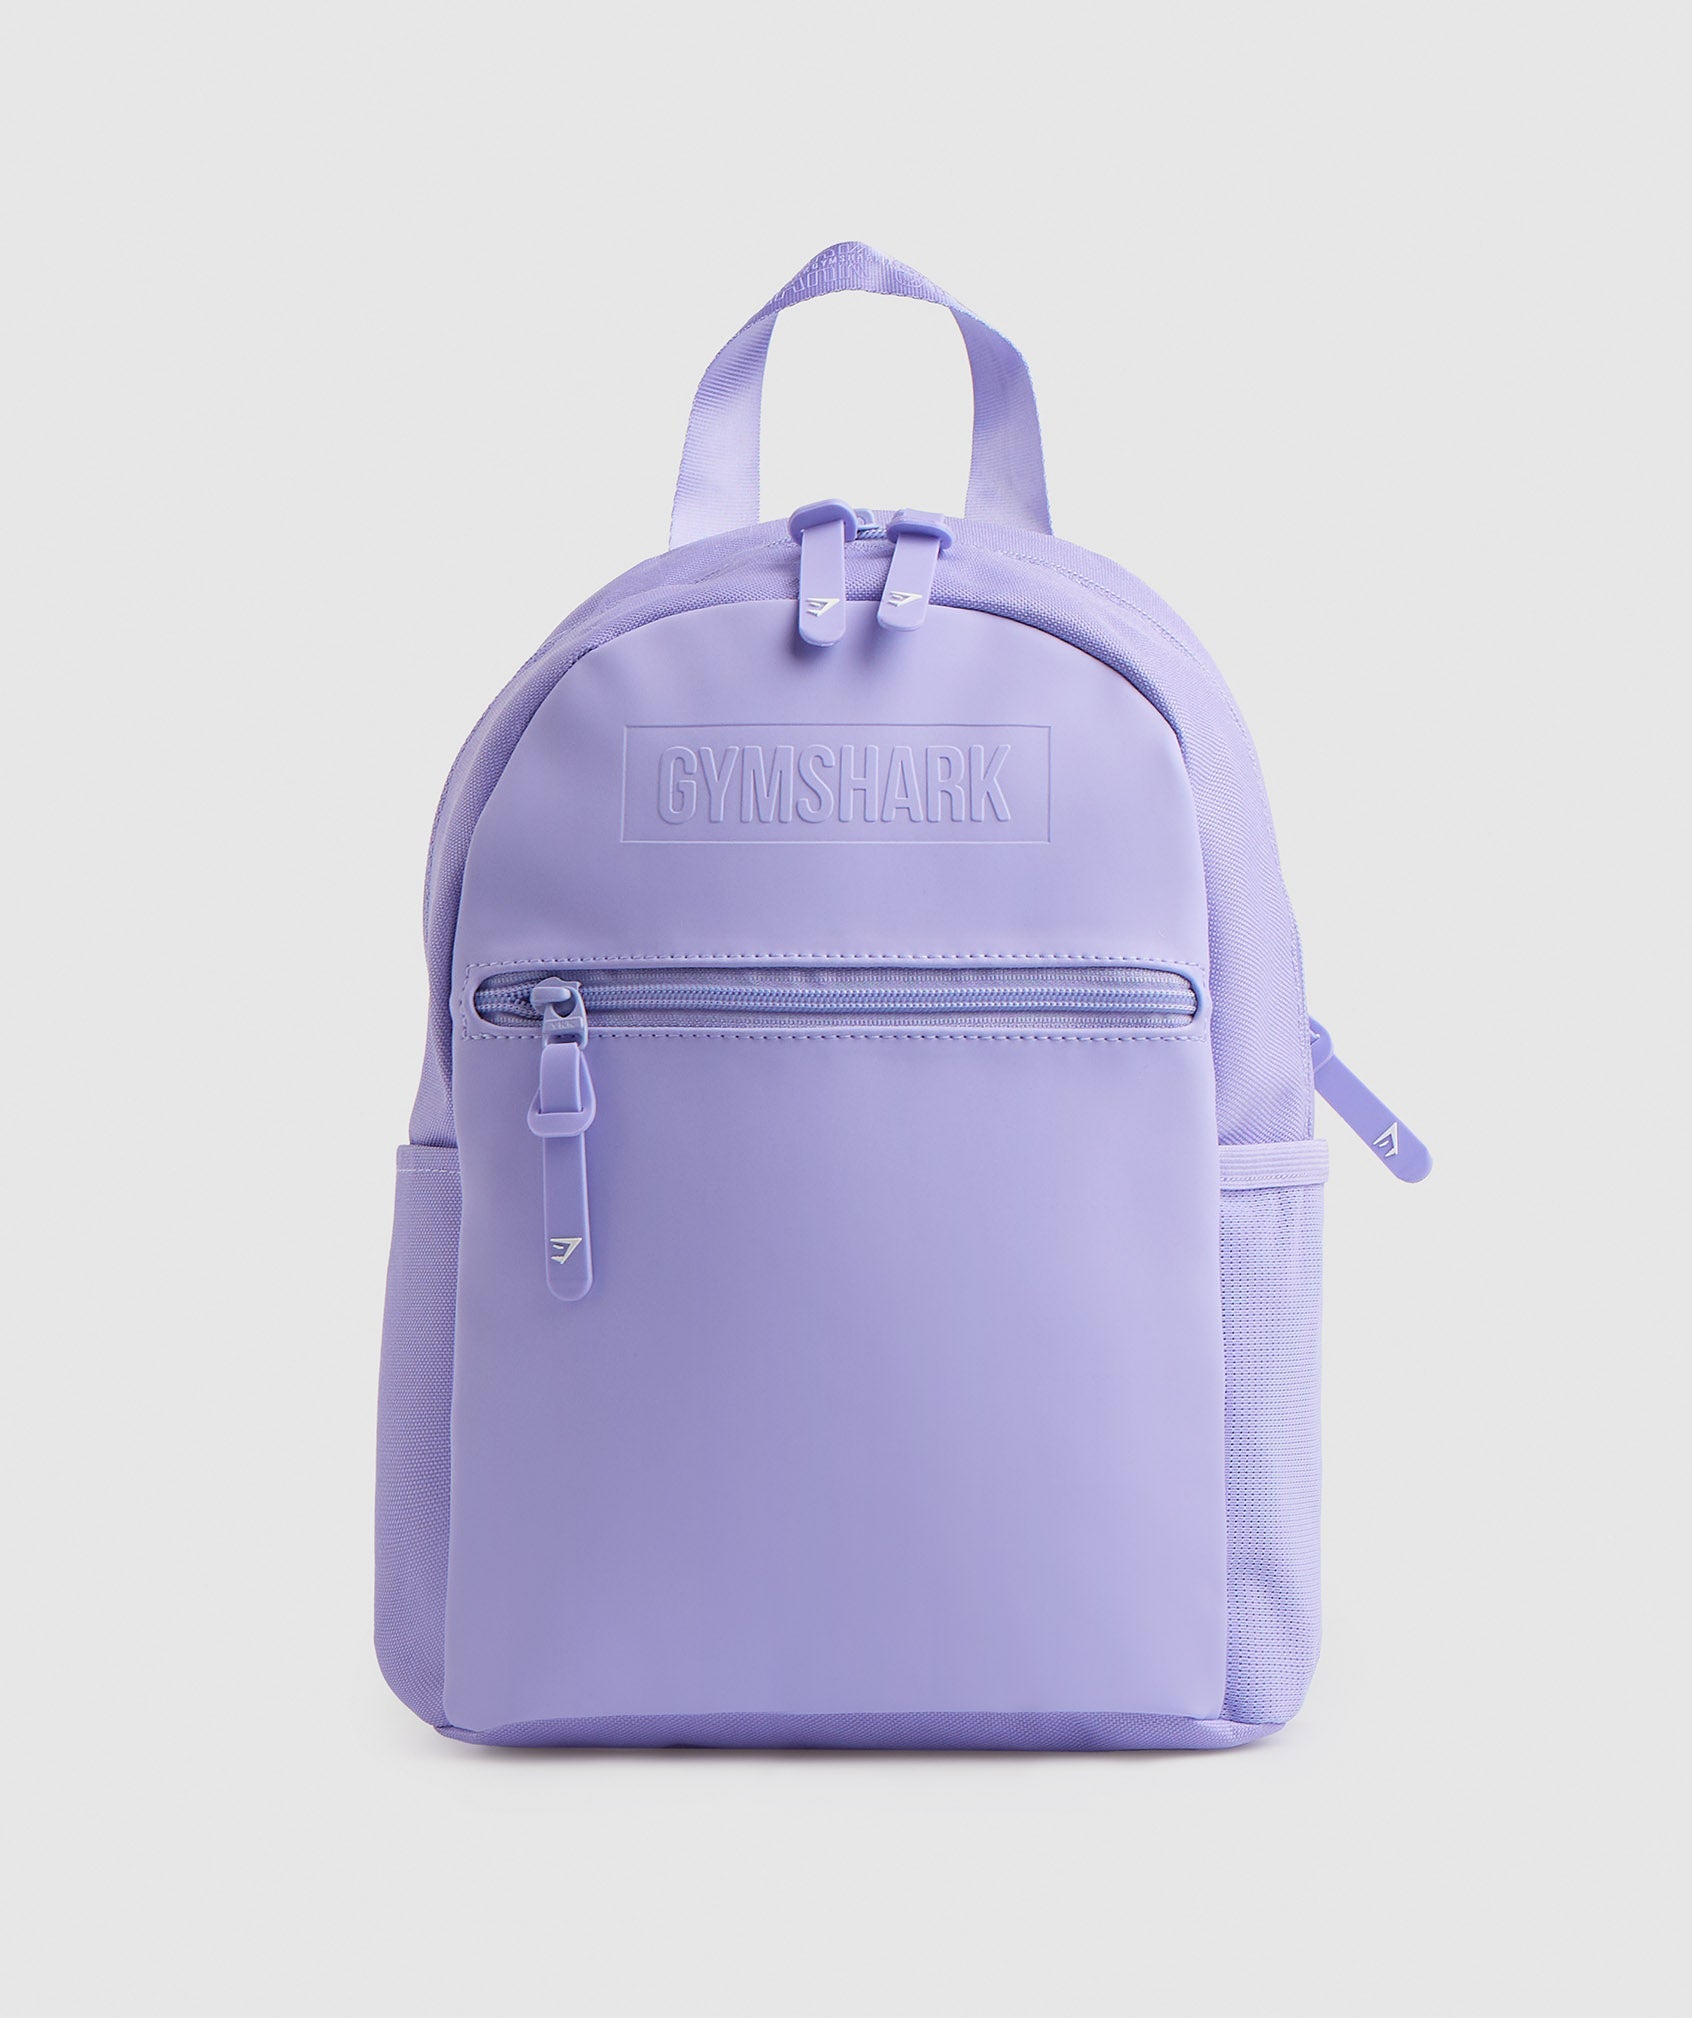 Gymshark Everyday Mini Backpack - Digital Violet